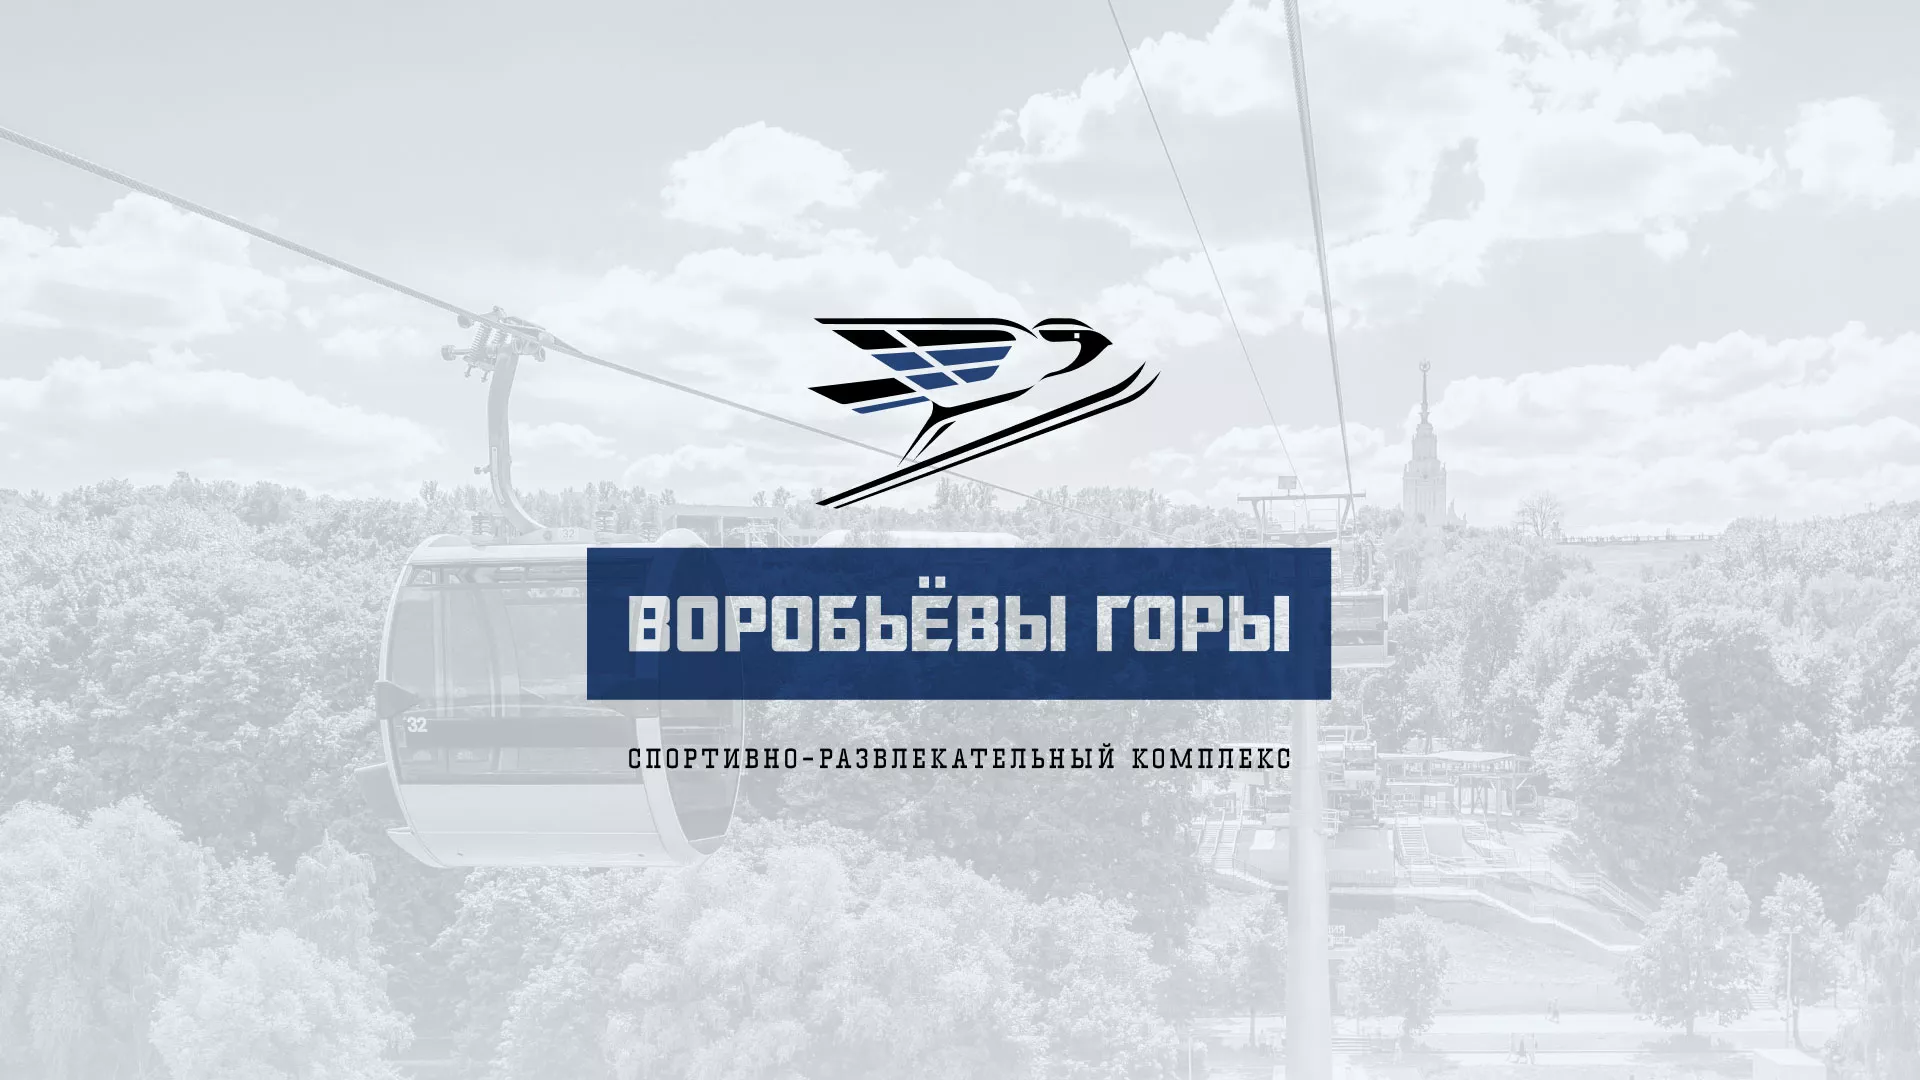 Разработка сайта в Новороссийске для спортивно-развлекательного комплекса «Воробьёвы горы»